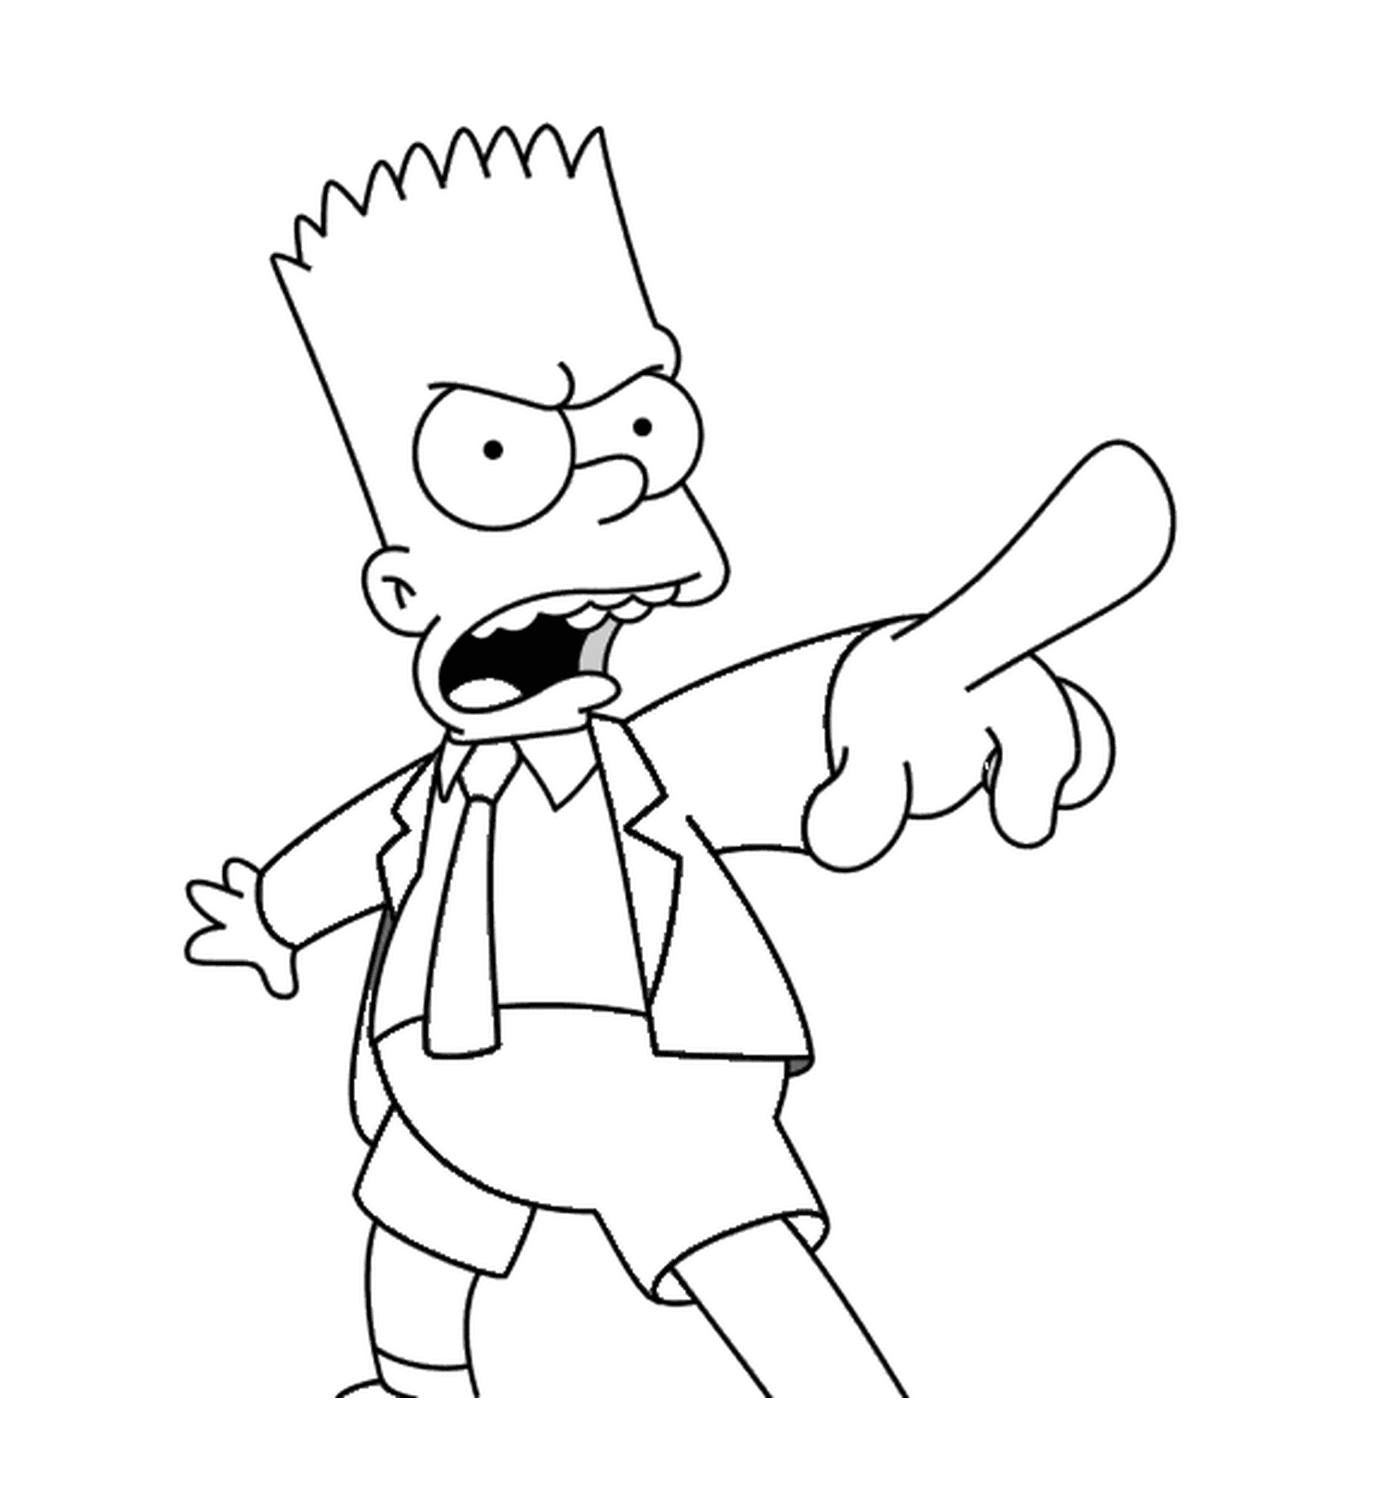  O Bart está zangado com uma gravata 